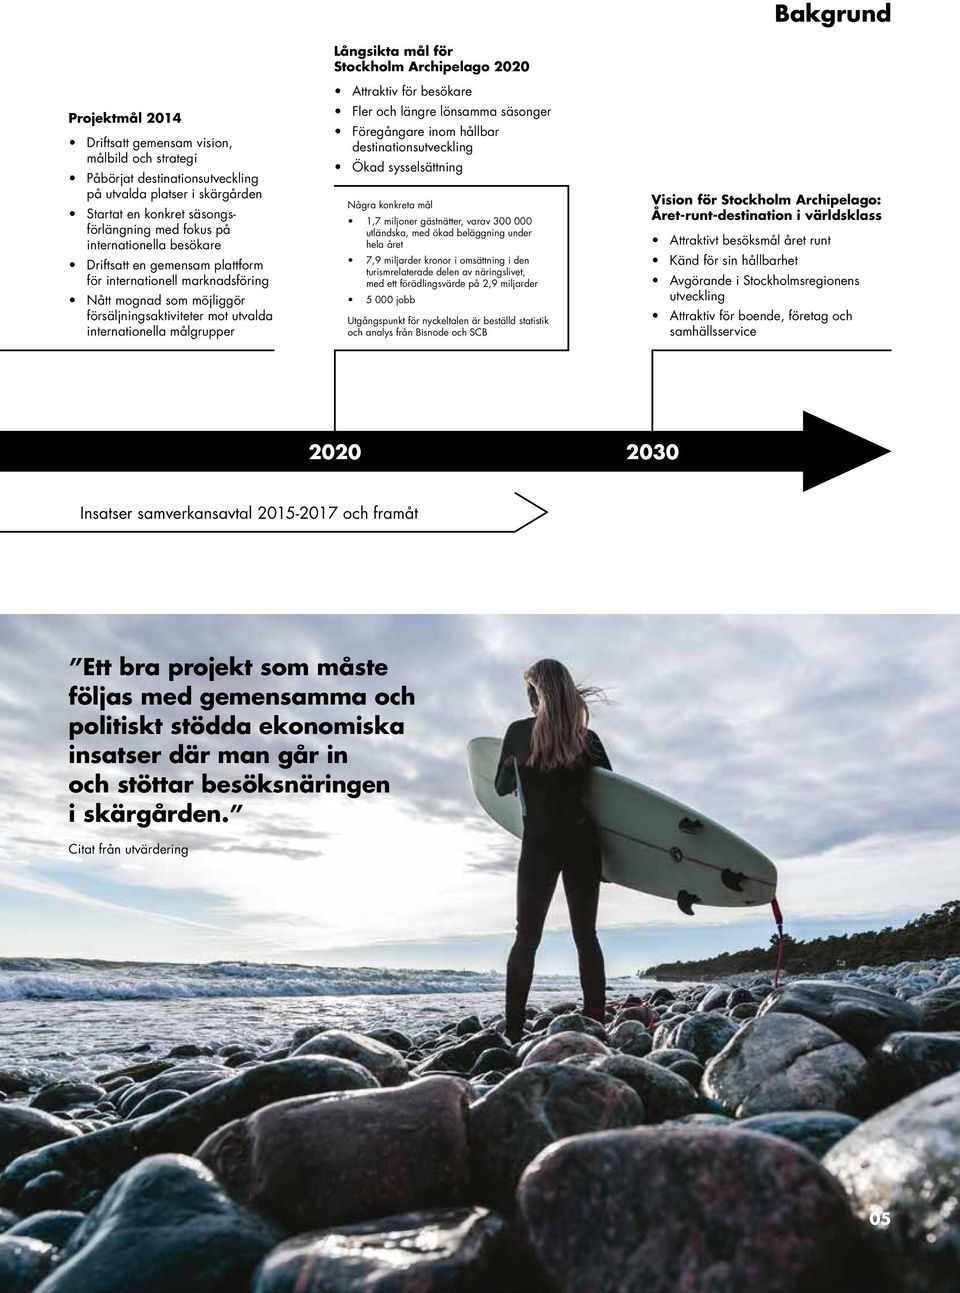 Stockholm Archipelago 2020 Attraktiv för besökare Fler och längre lönsamma säsonger Föregångare inom hållbar destinationsutveckling Ökad sysselsättning Några konkreta mål 1,7 miljoner gästnätter,